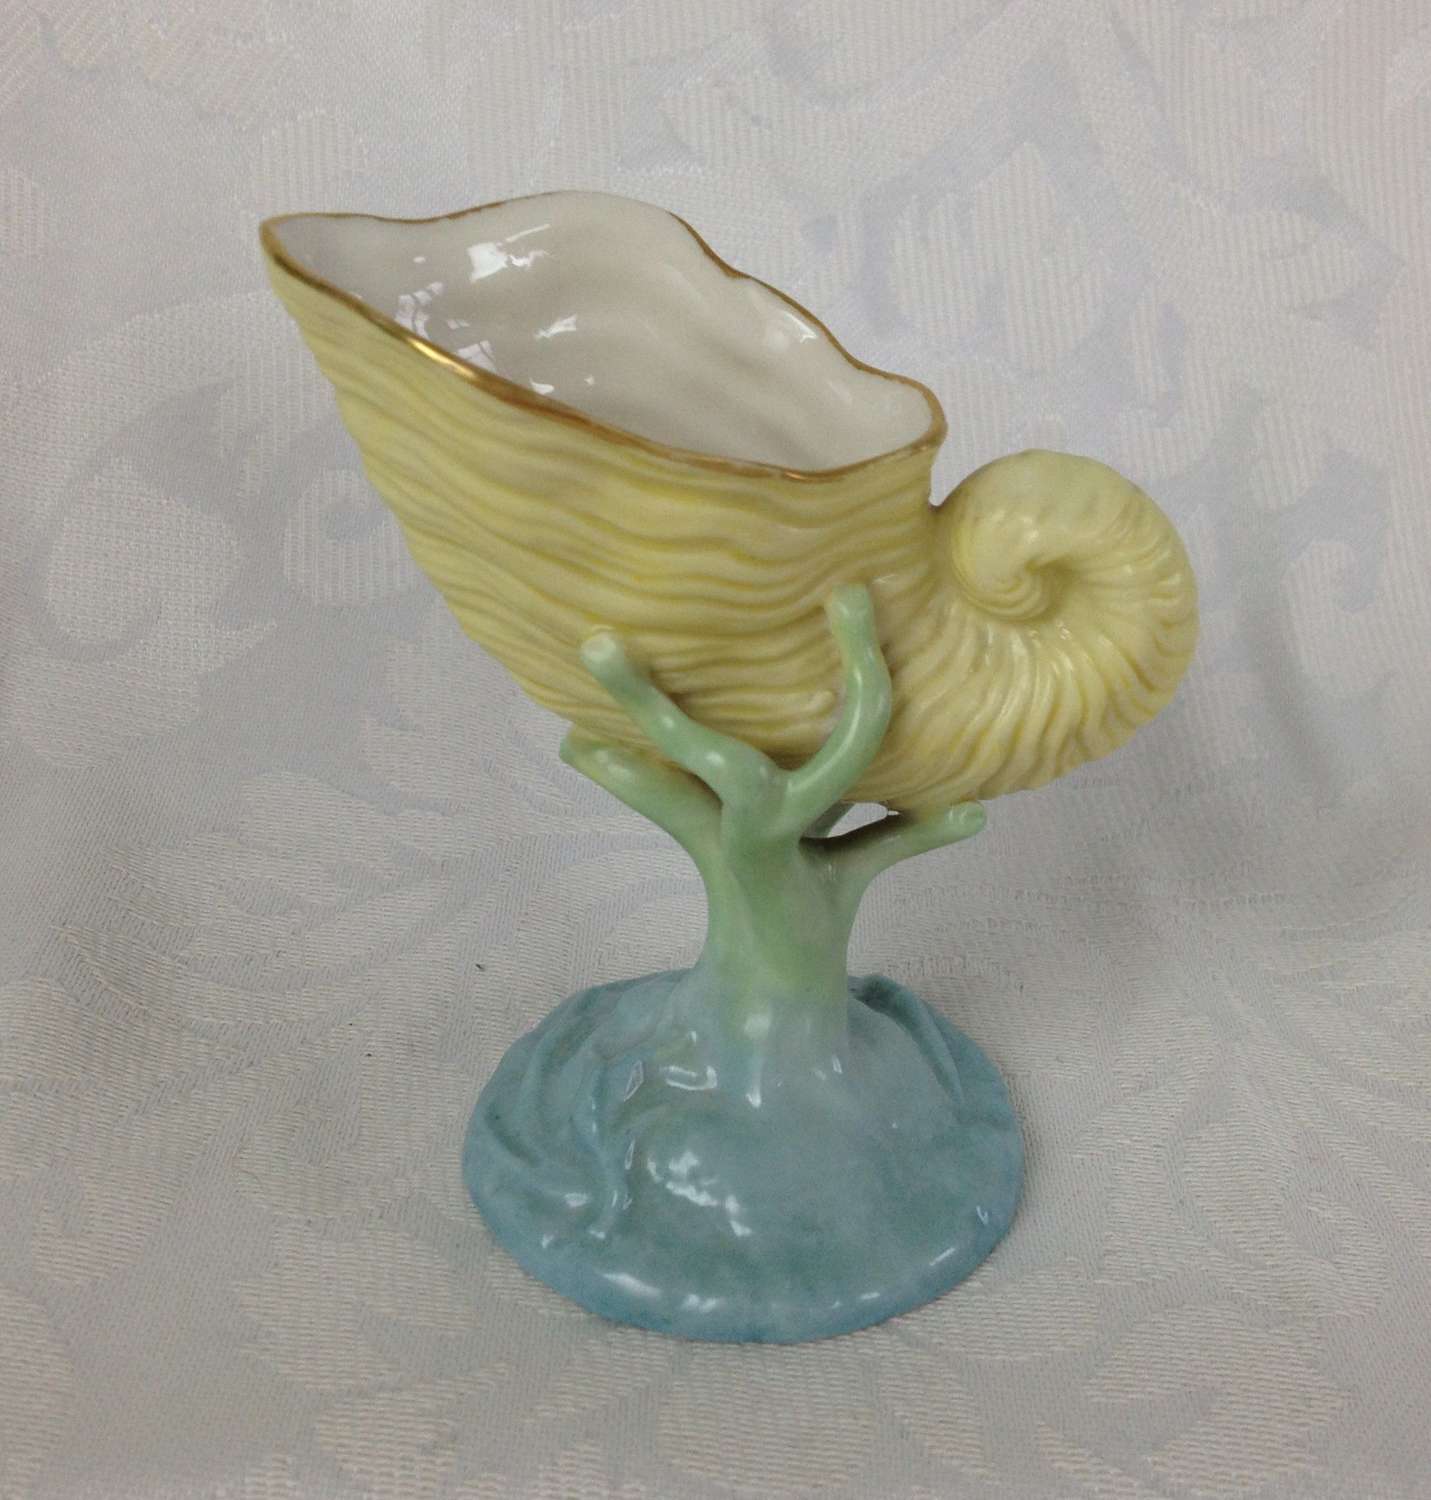 Miniature Art Nouveau Royal Worcester Nautilus Shell Vase / Salt